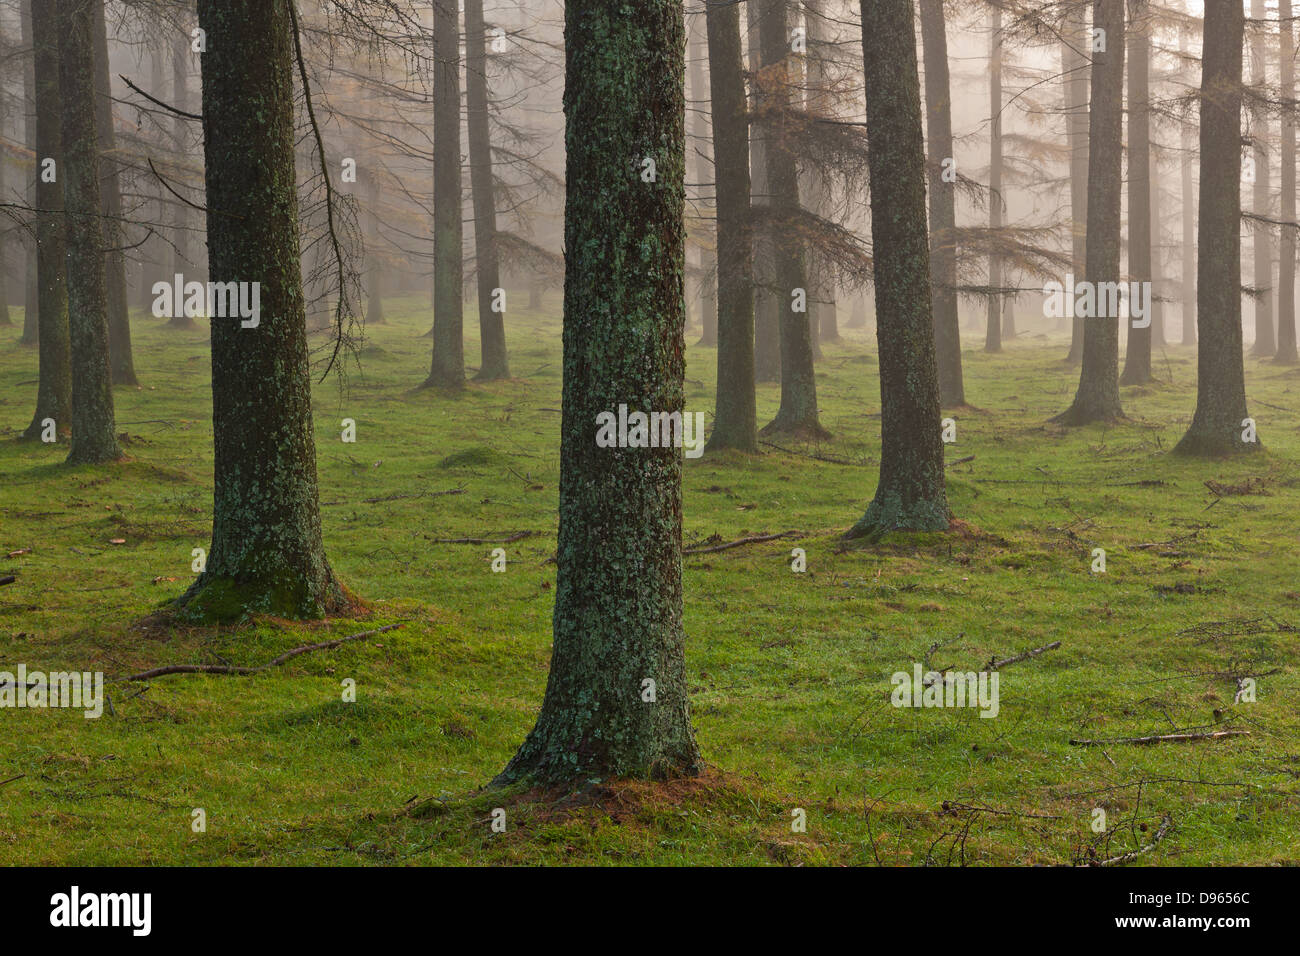 European larch forest, Gorbea Natural Park, Bizkaia, Spain Stock Photo